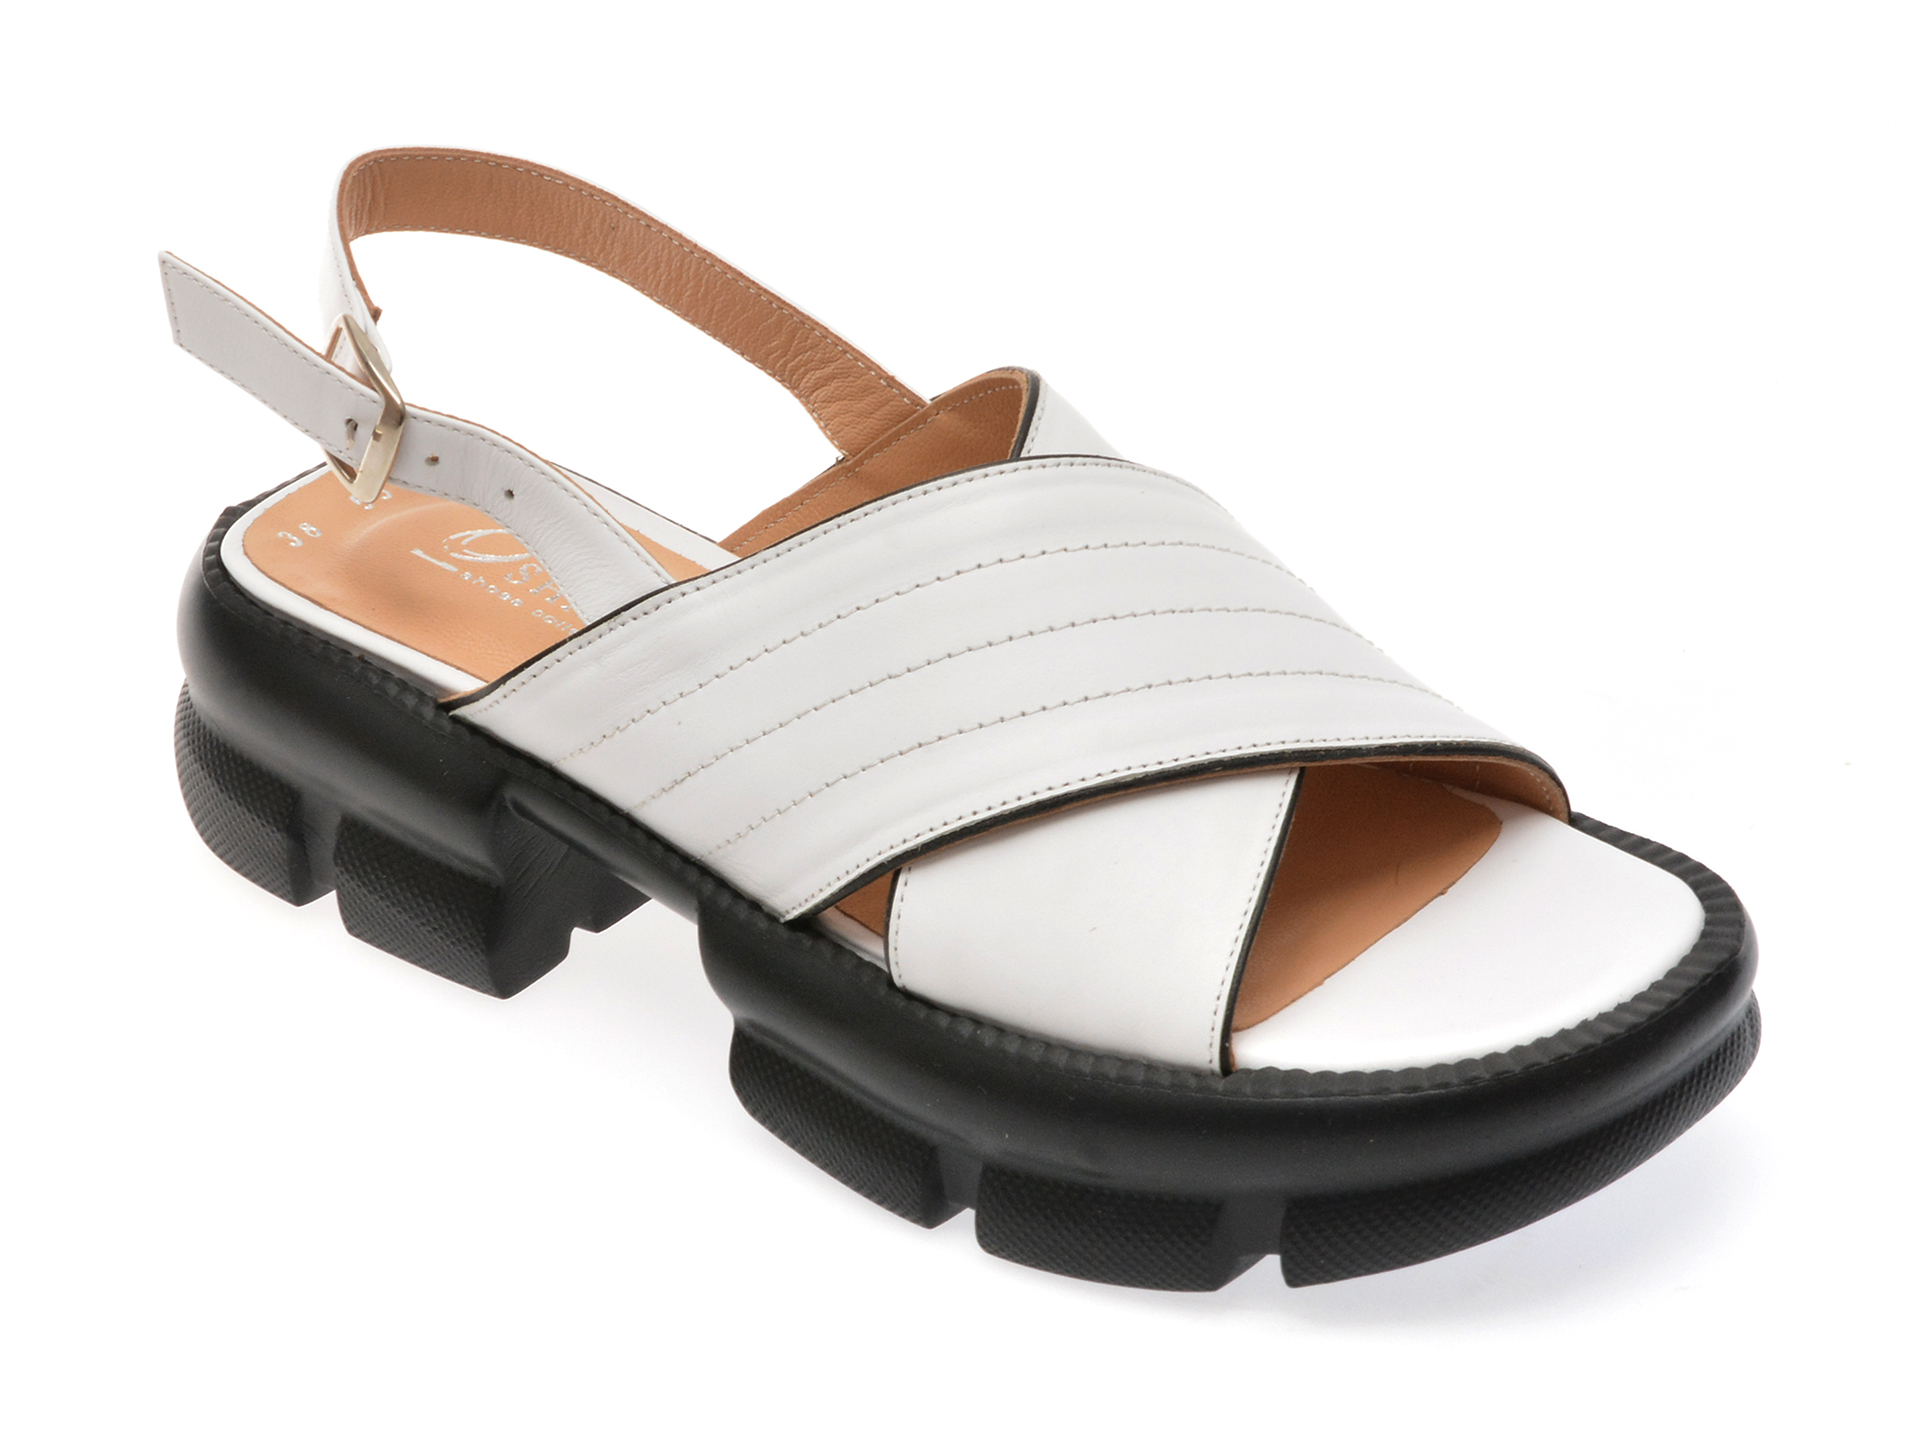 Sandale casual OSHADE albe, 43001, din piele naturala